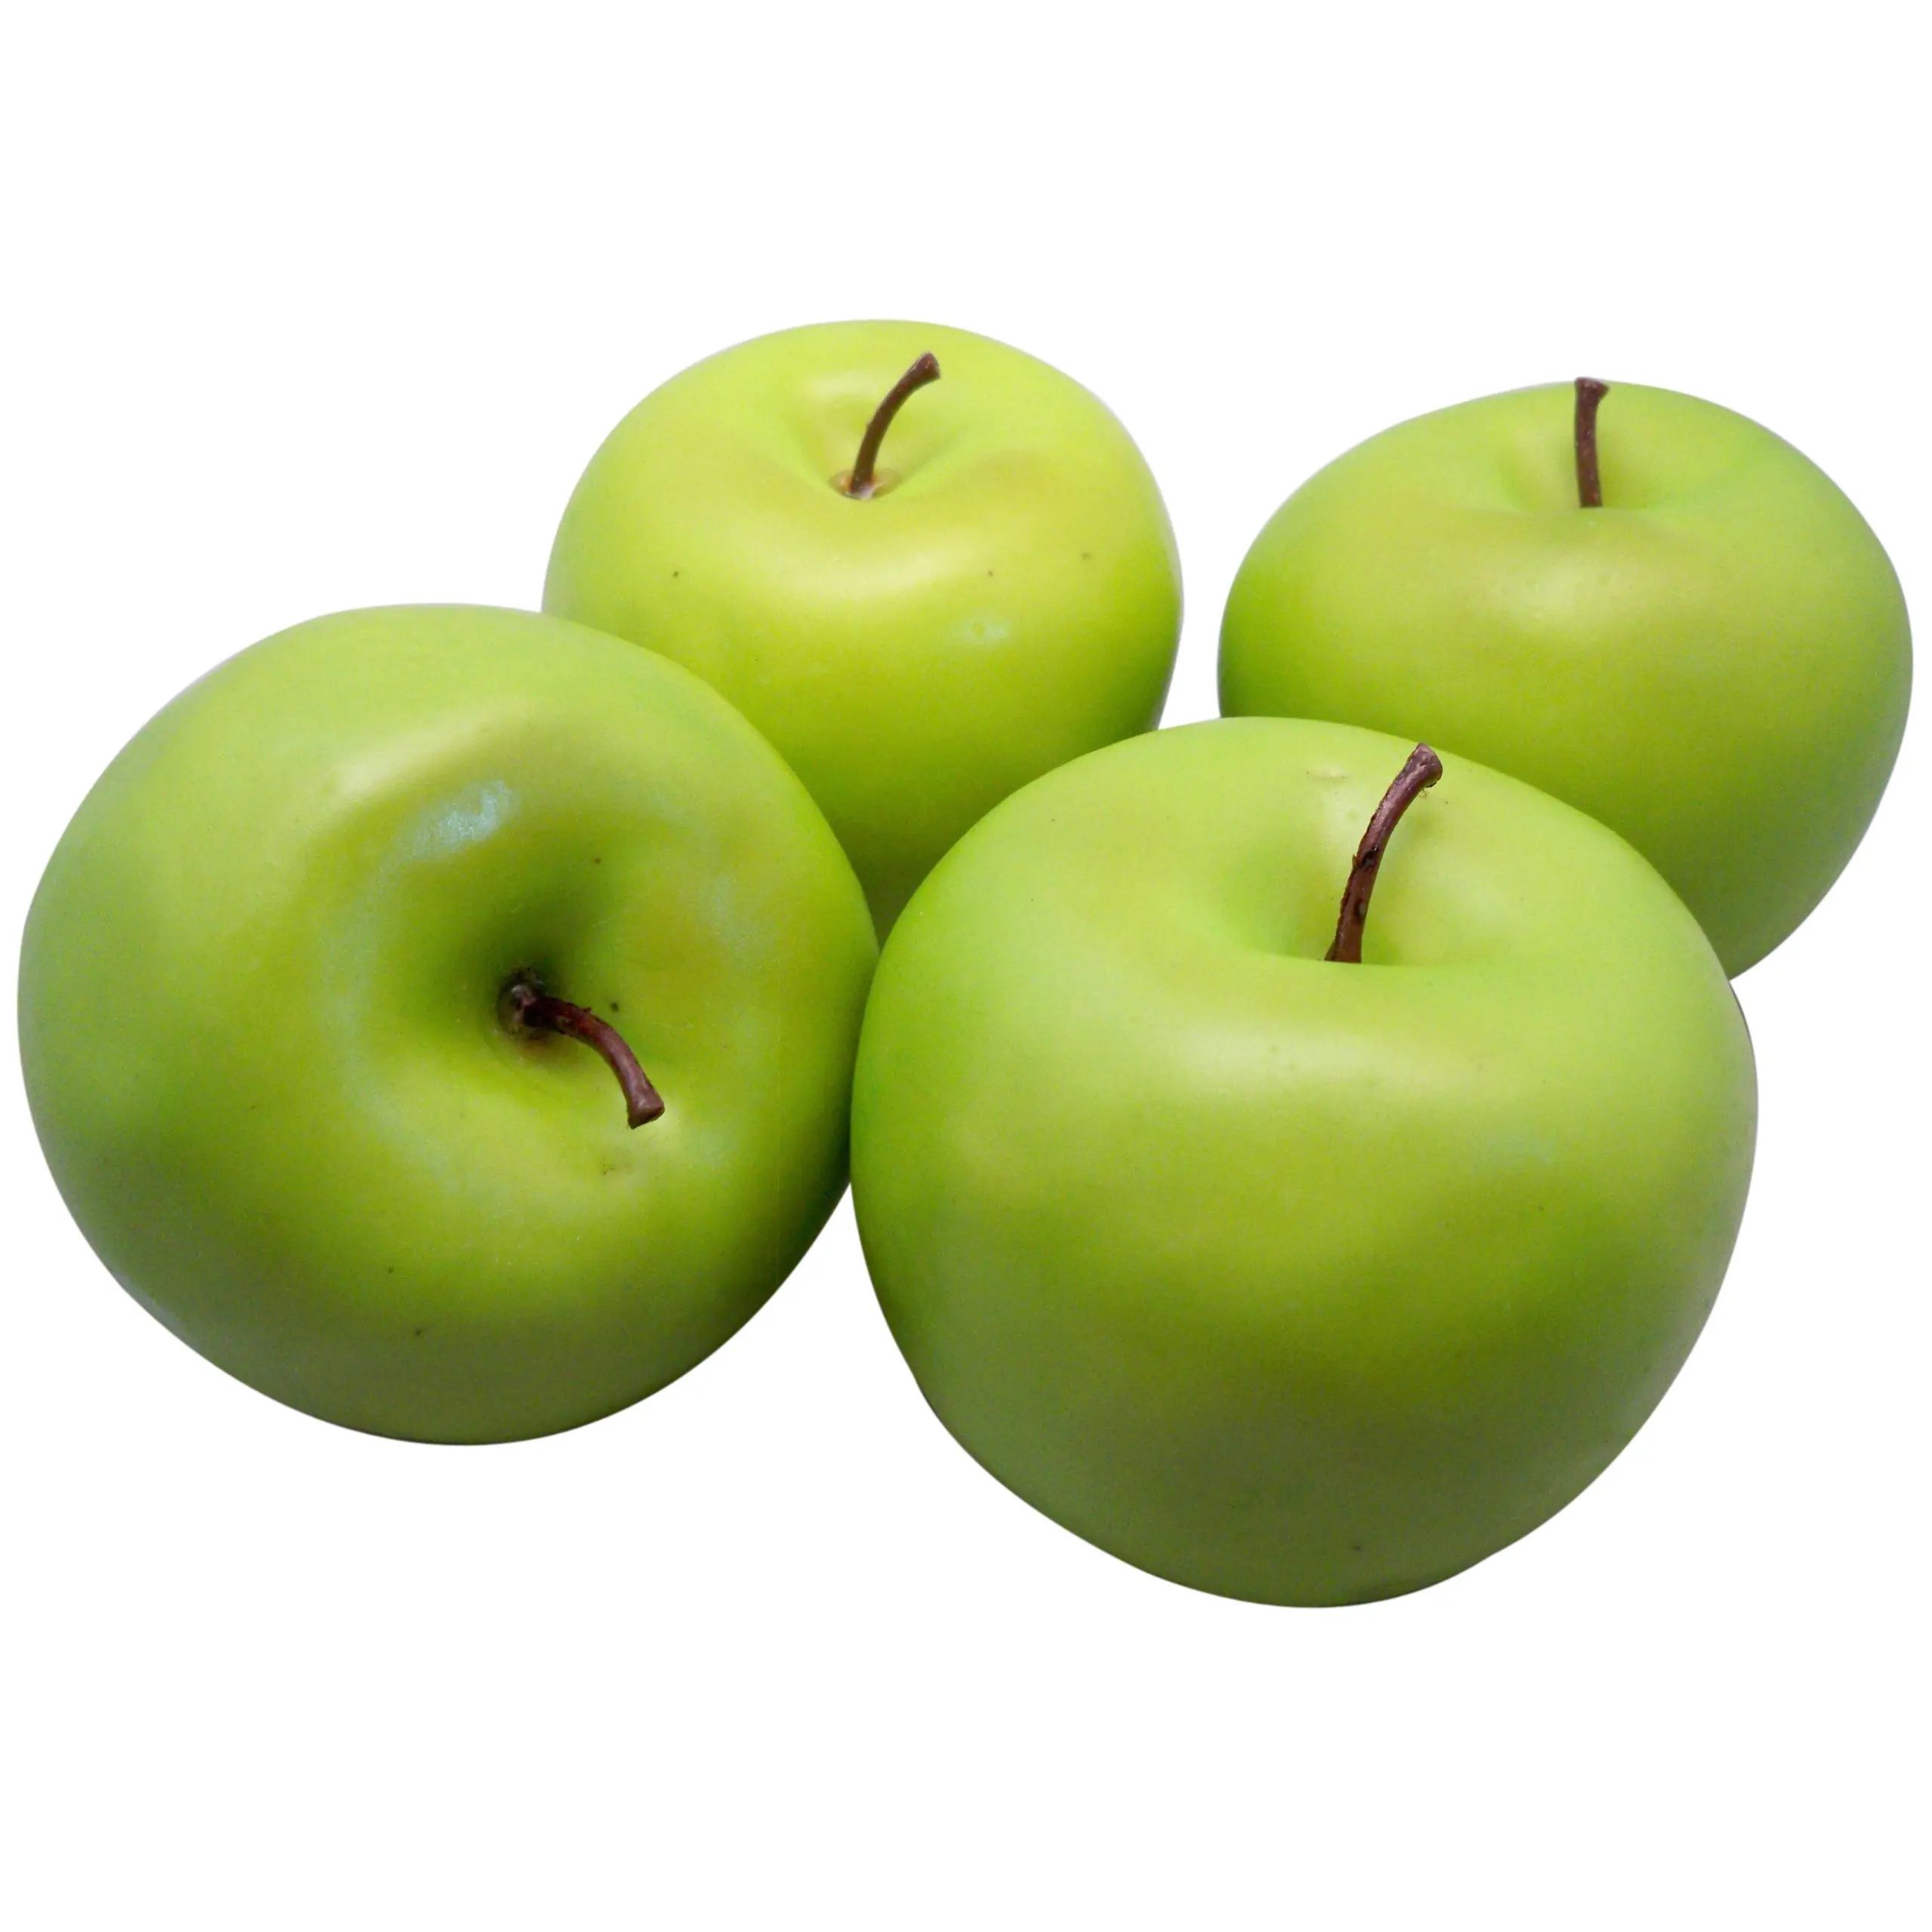 Четверо яблок. Яблоки зеленые. 4 Яблока. 4 Зеленых яблока. Яблоки 4 штуки.